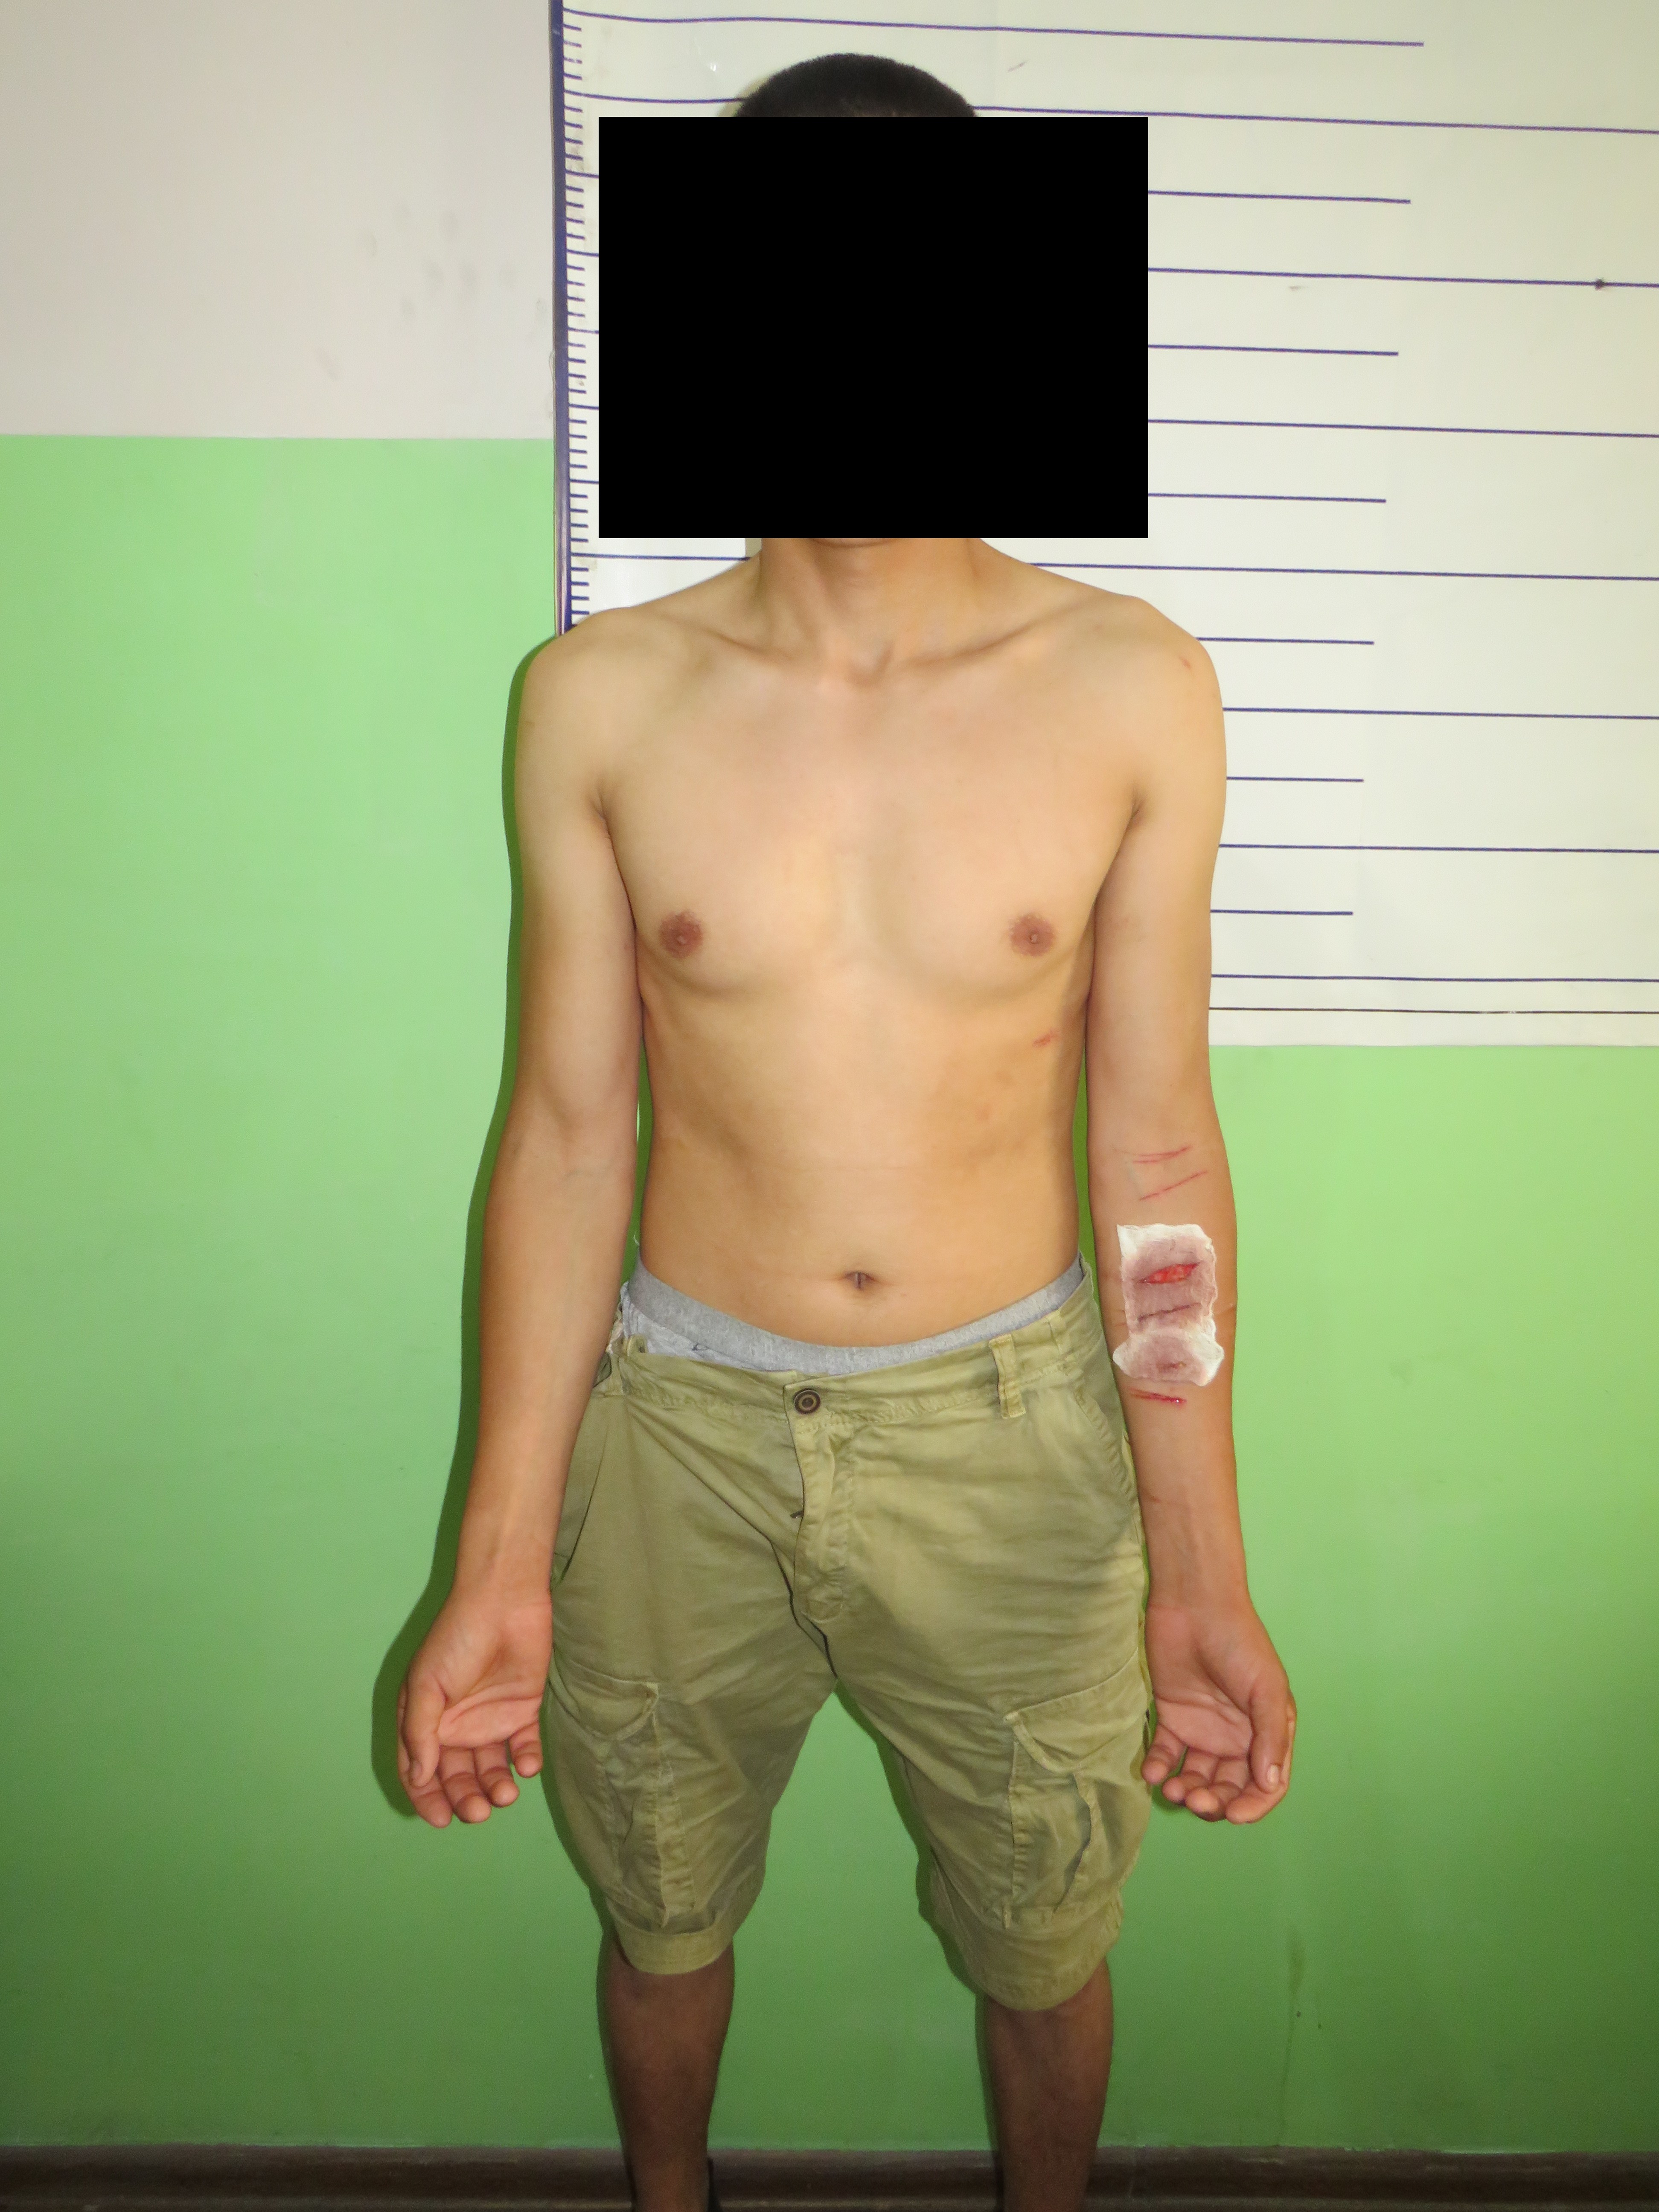 Задержанный в ИВС заявил, что его пытали сотрудники Ленинского РУВД и, не выдержав пытки, он порезал себе руки.